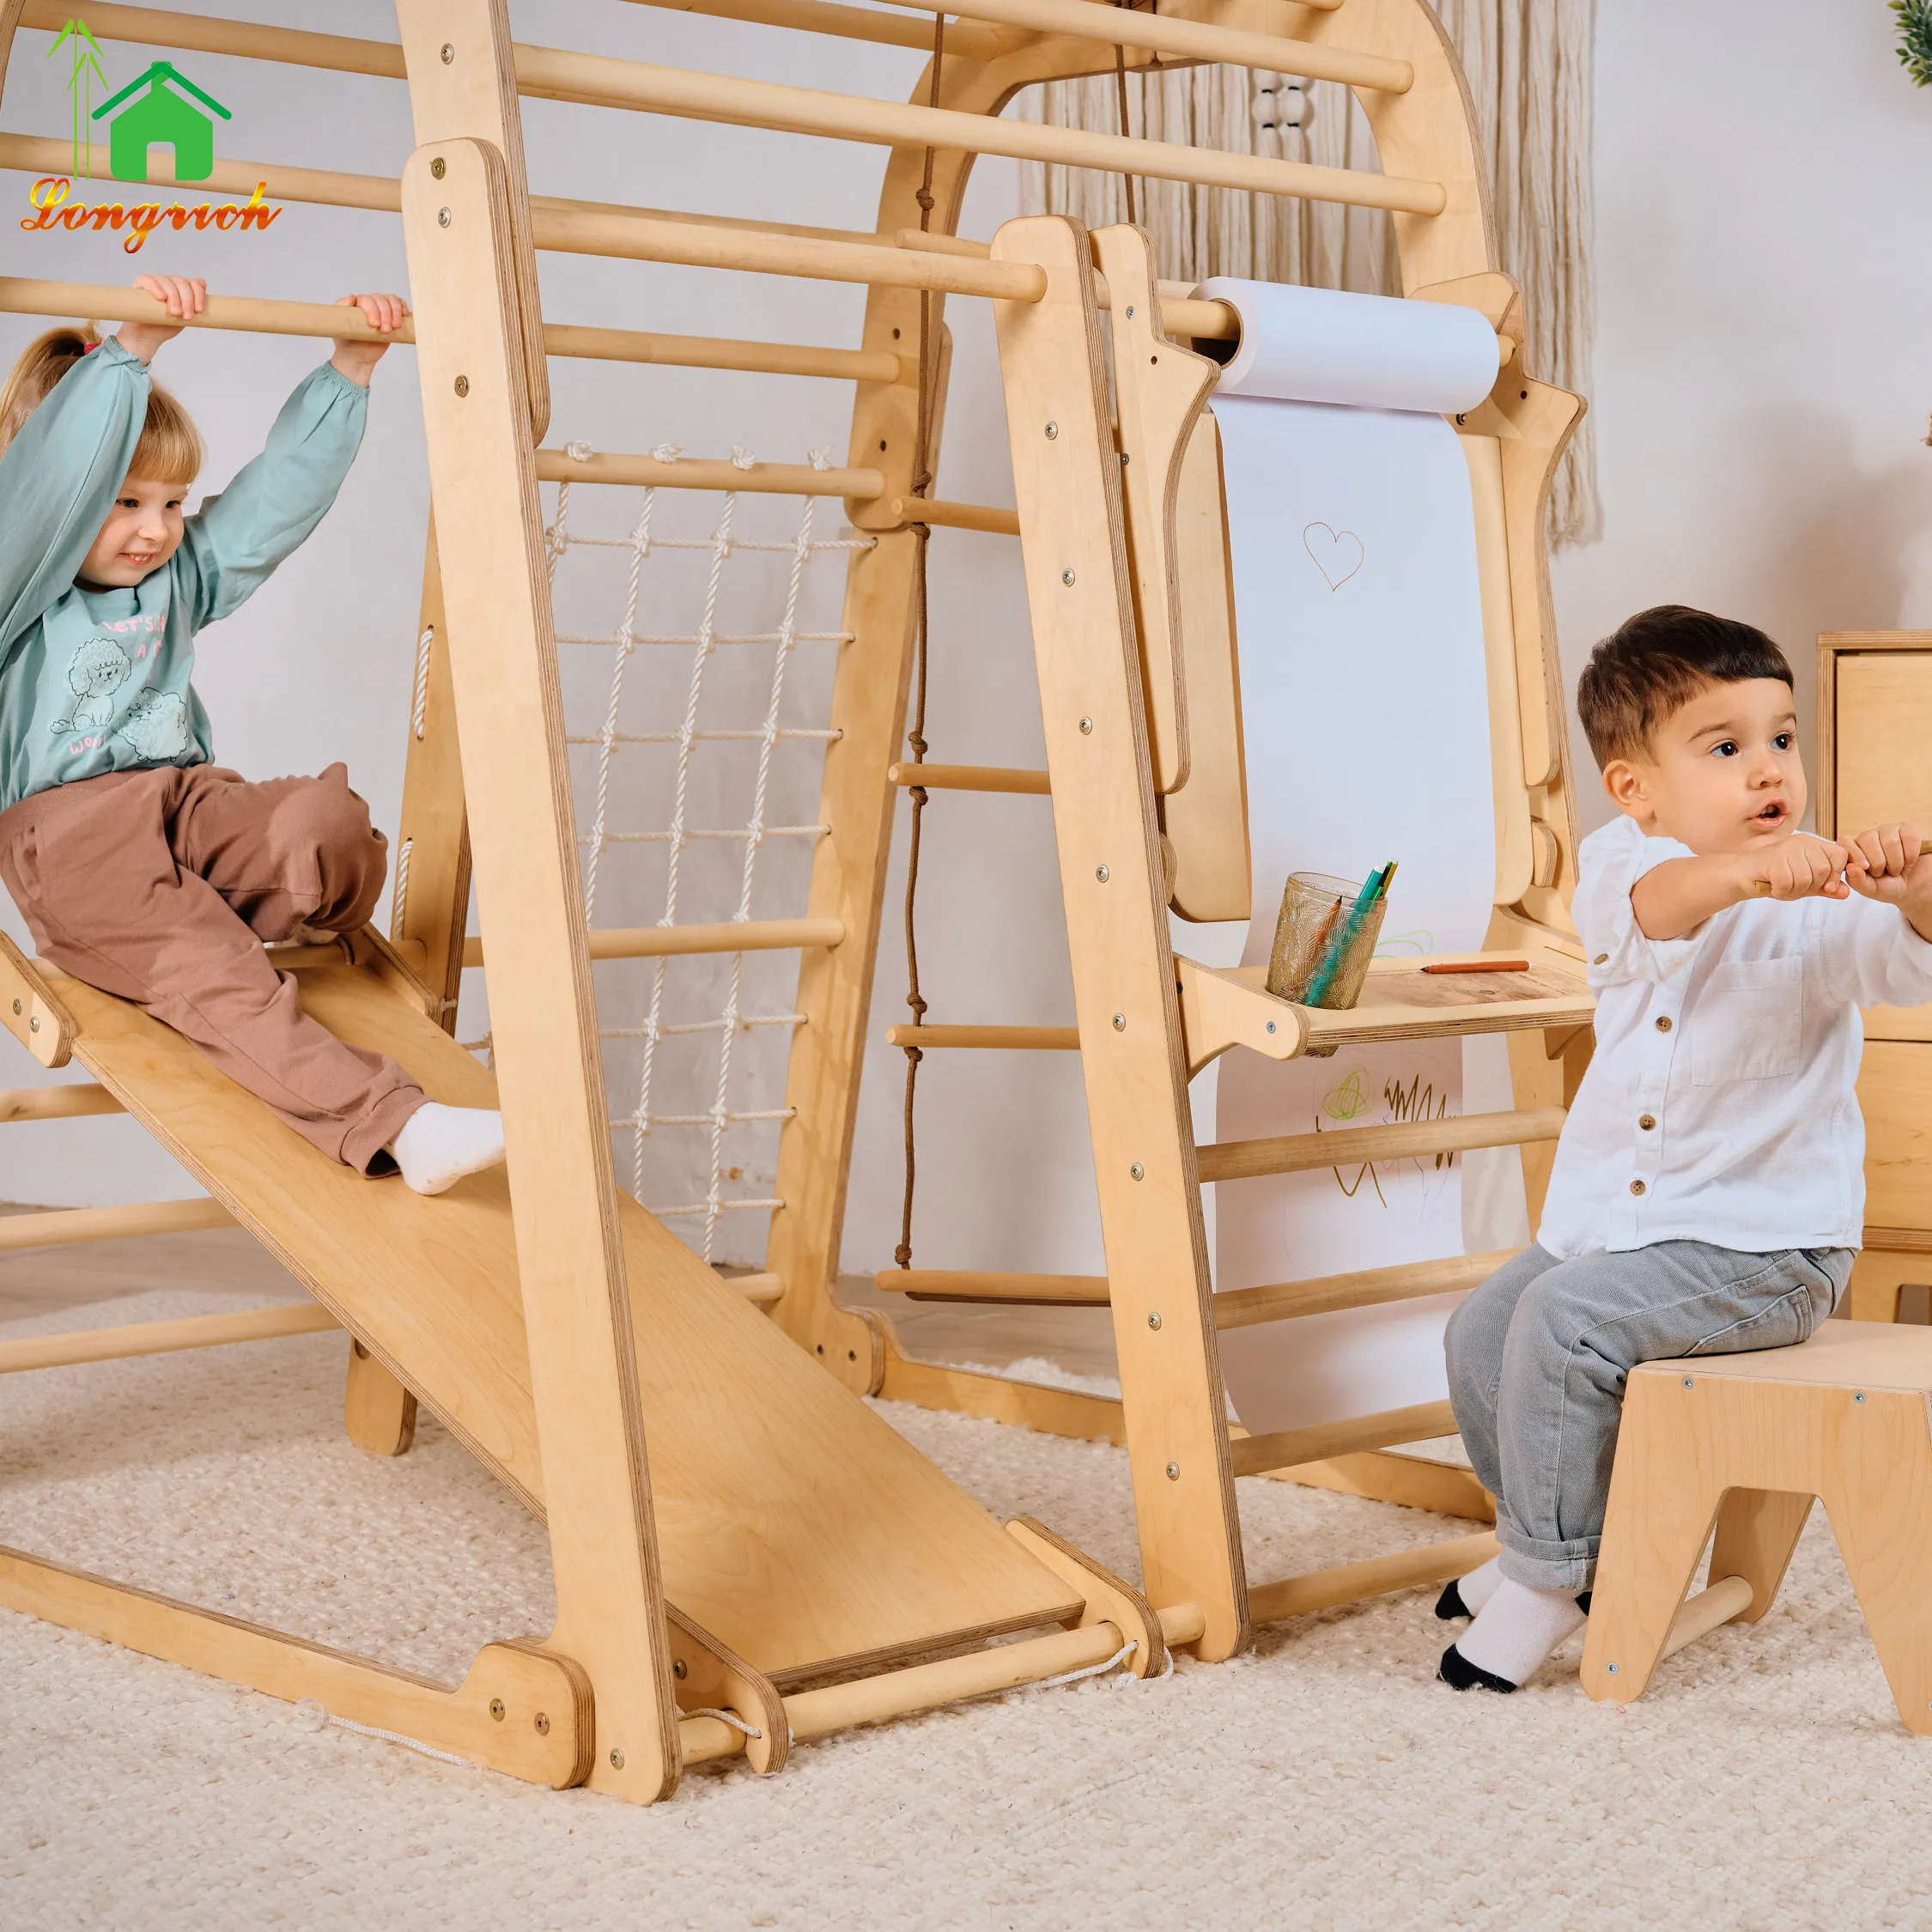 Bamboo triângulo fornecedor madeira pato espuma elétrica playground indoor parede escalada carros escadas faixa slide brinquedo para crianças